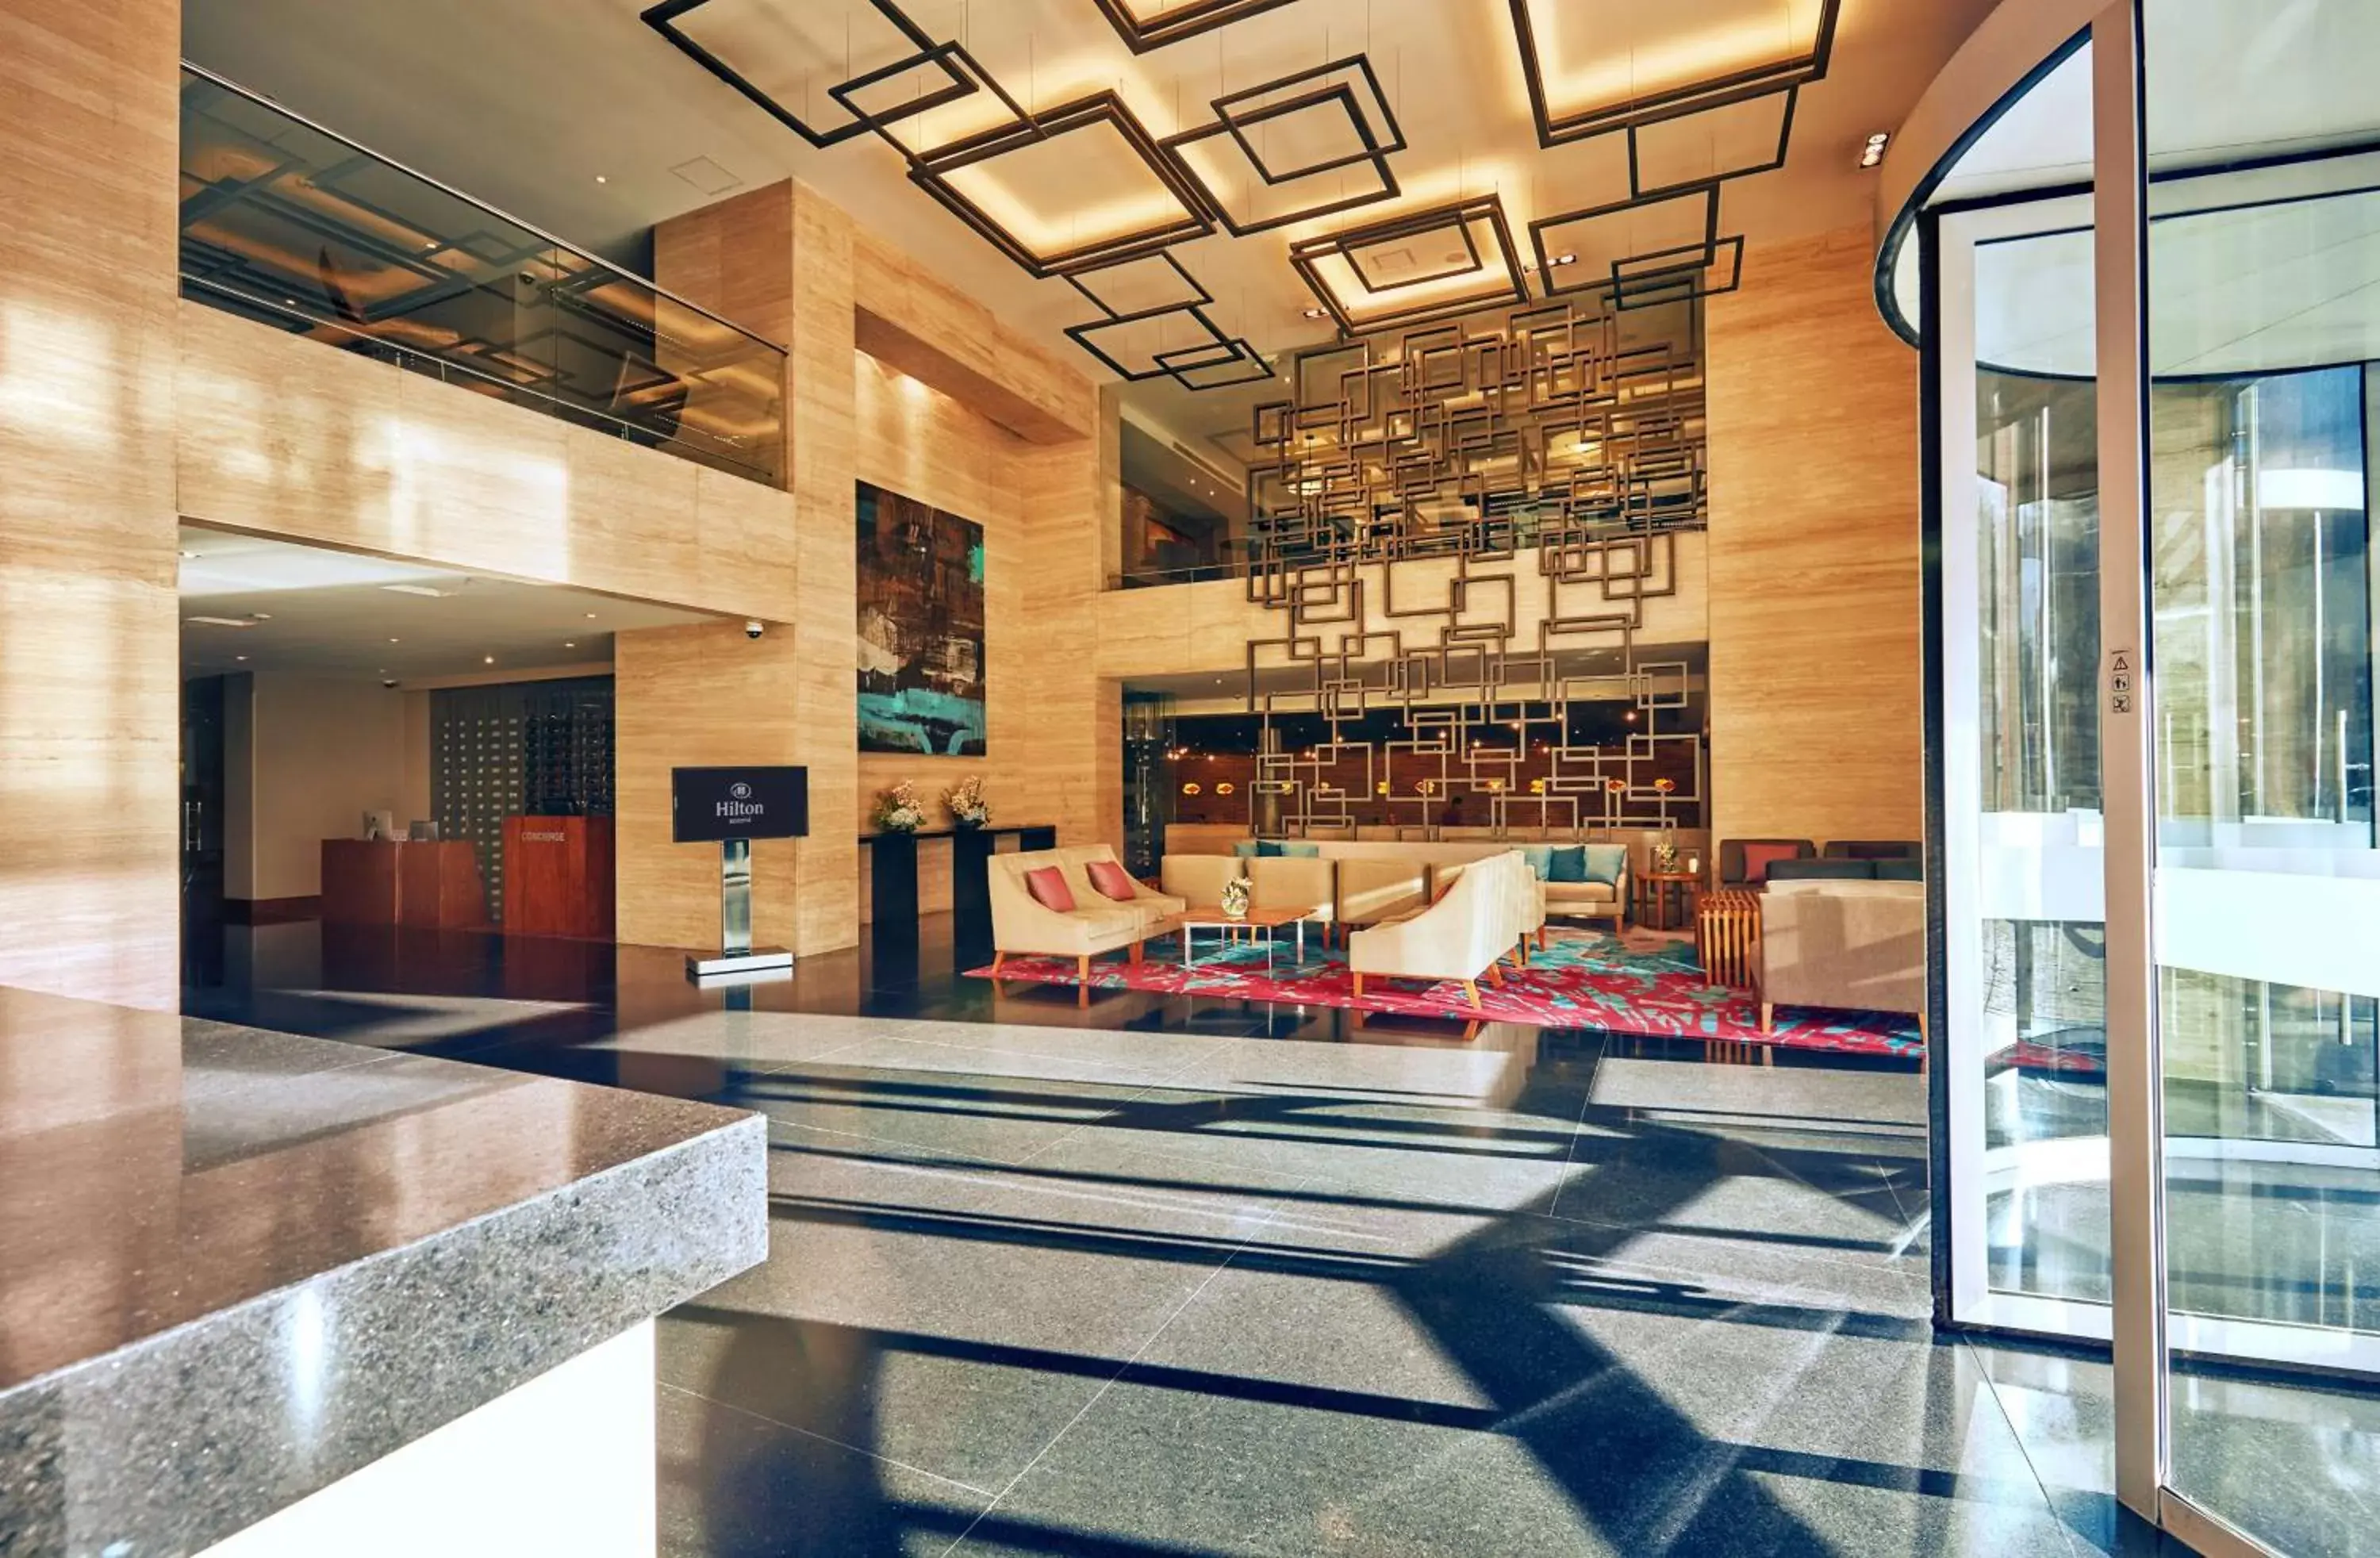 Lobby or reception, Lobby/Reception in Hilton Bogotá